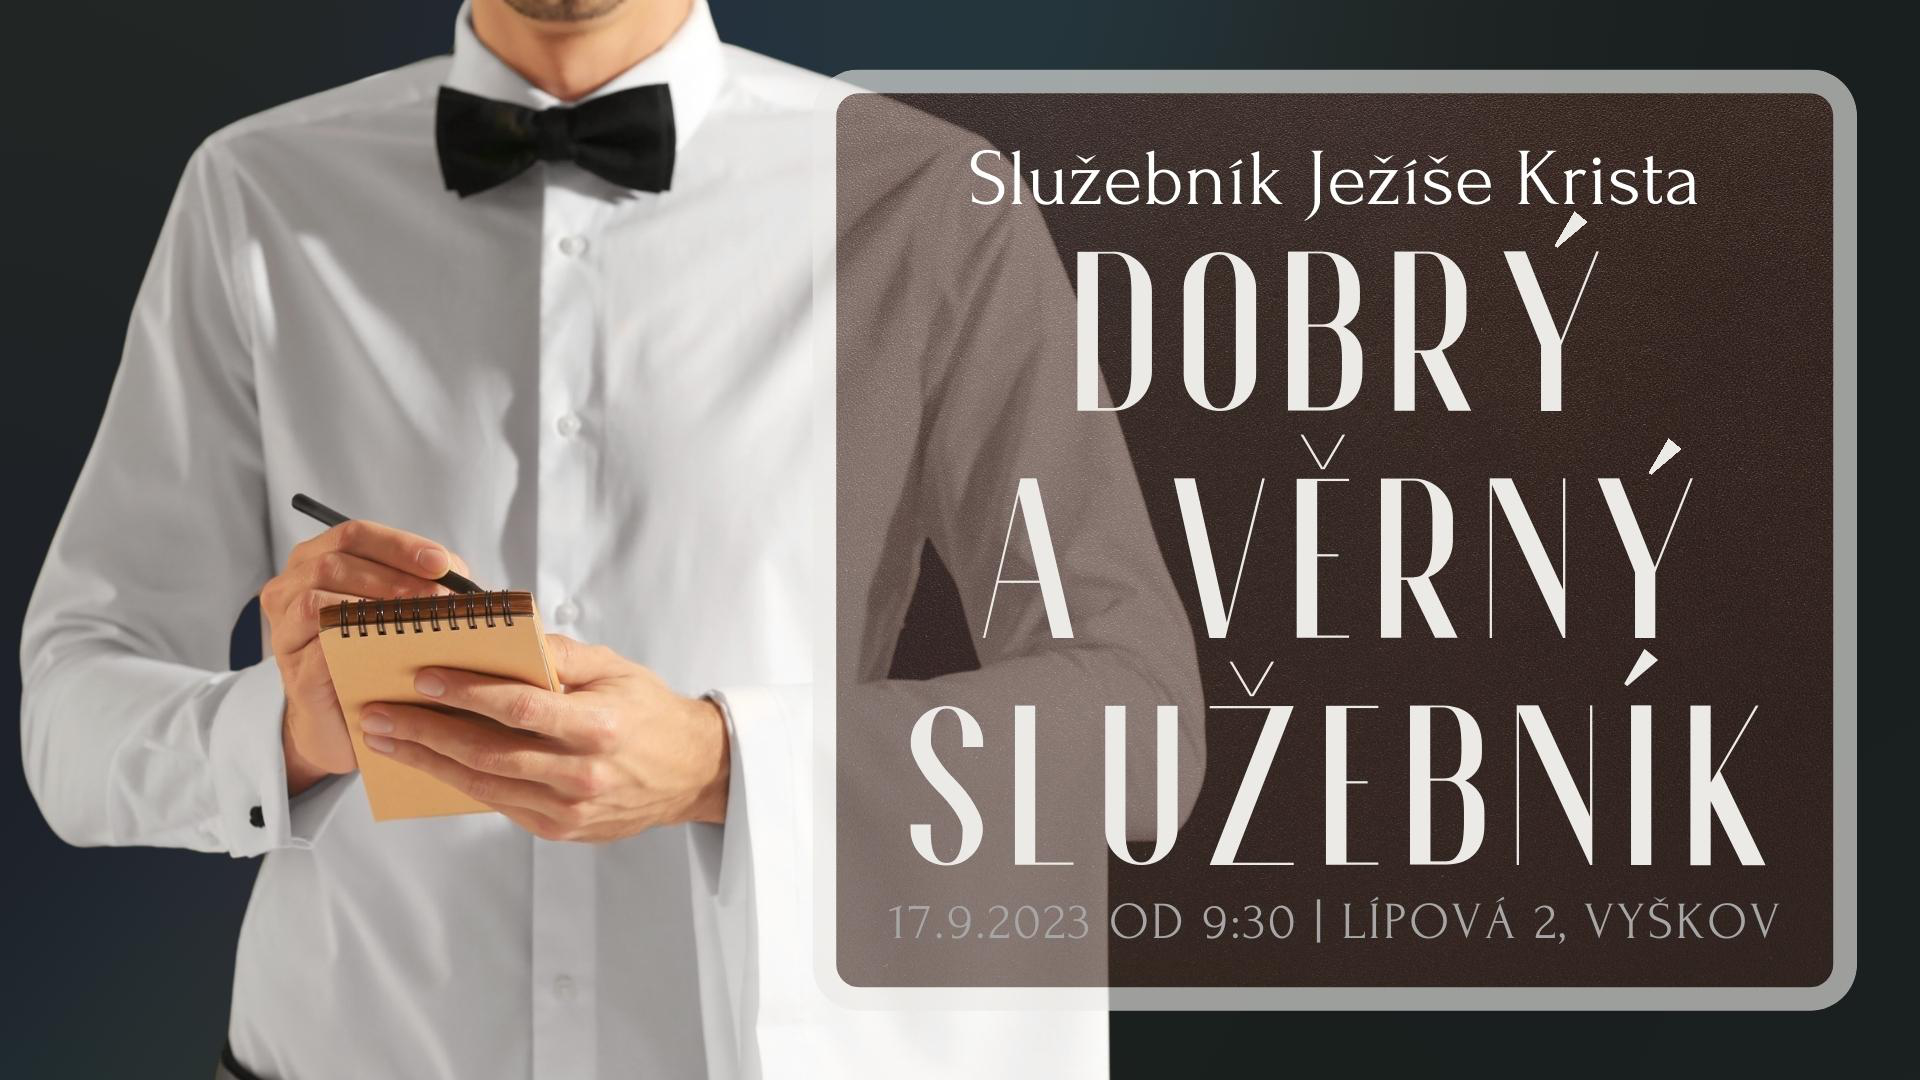 2023-09-17_dobry_a_verny_sluzebnik.jpg